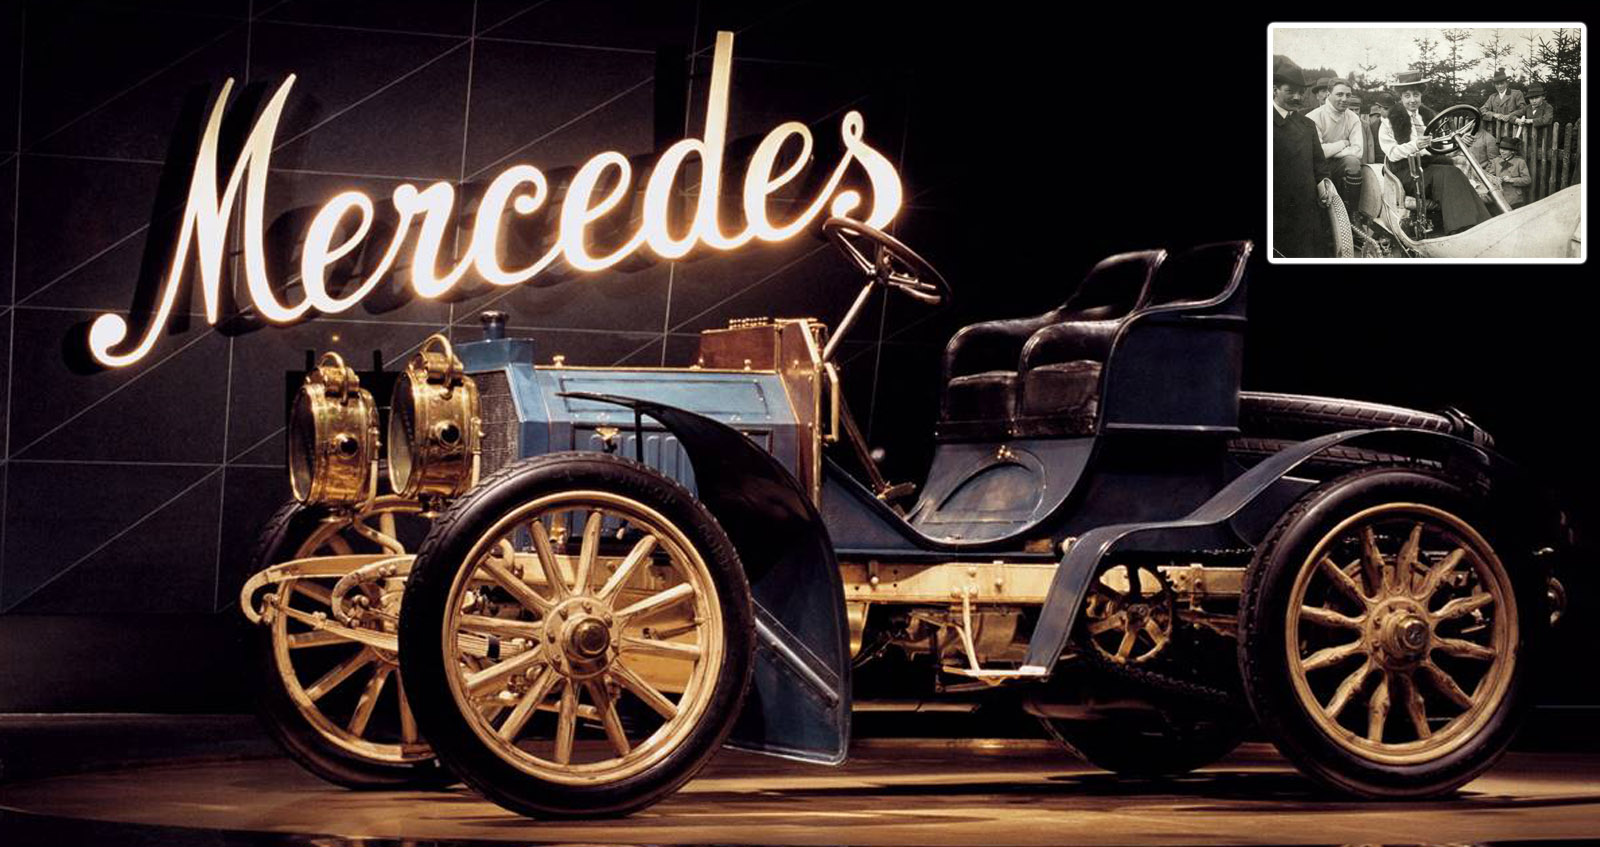 Mercedes ฉลอง 120 ปี วันเกิดแบรนด์รถยนต์ที่ตั้งชื่อมาจากผู้หญิง